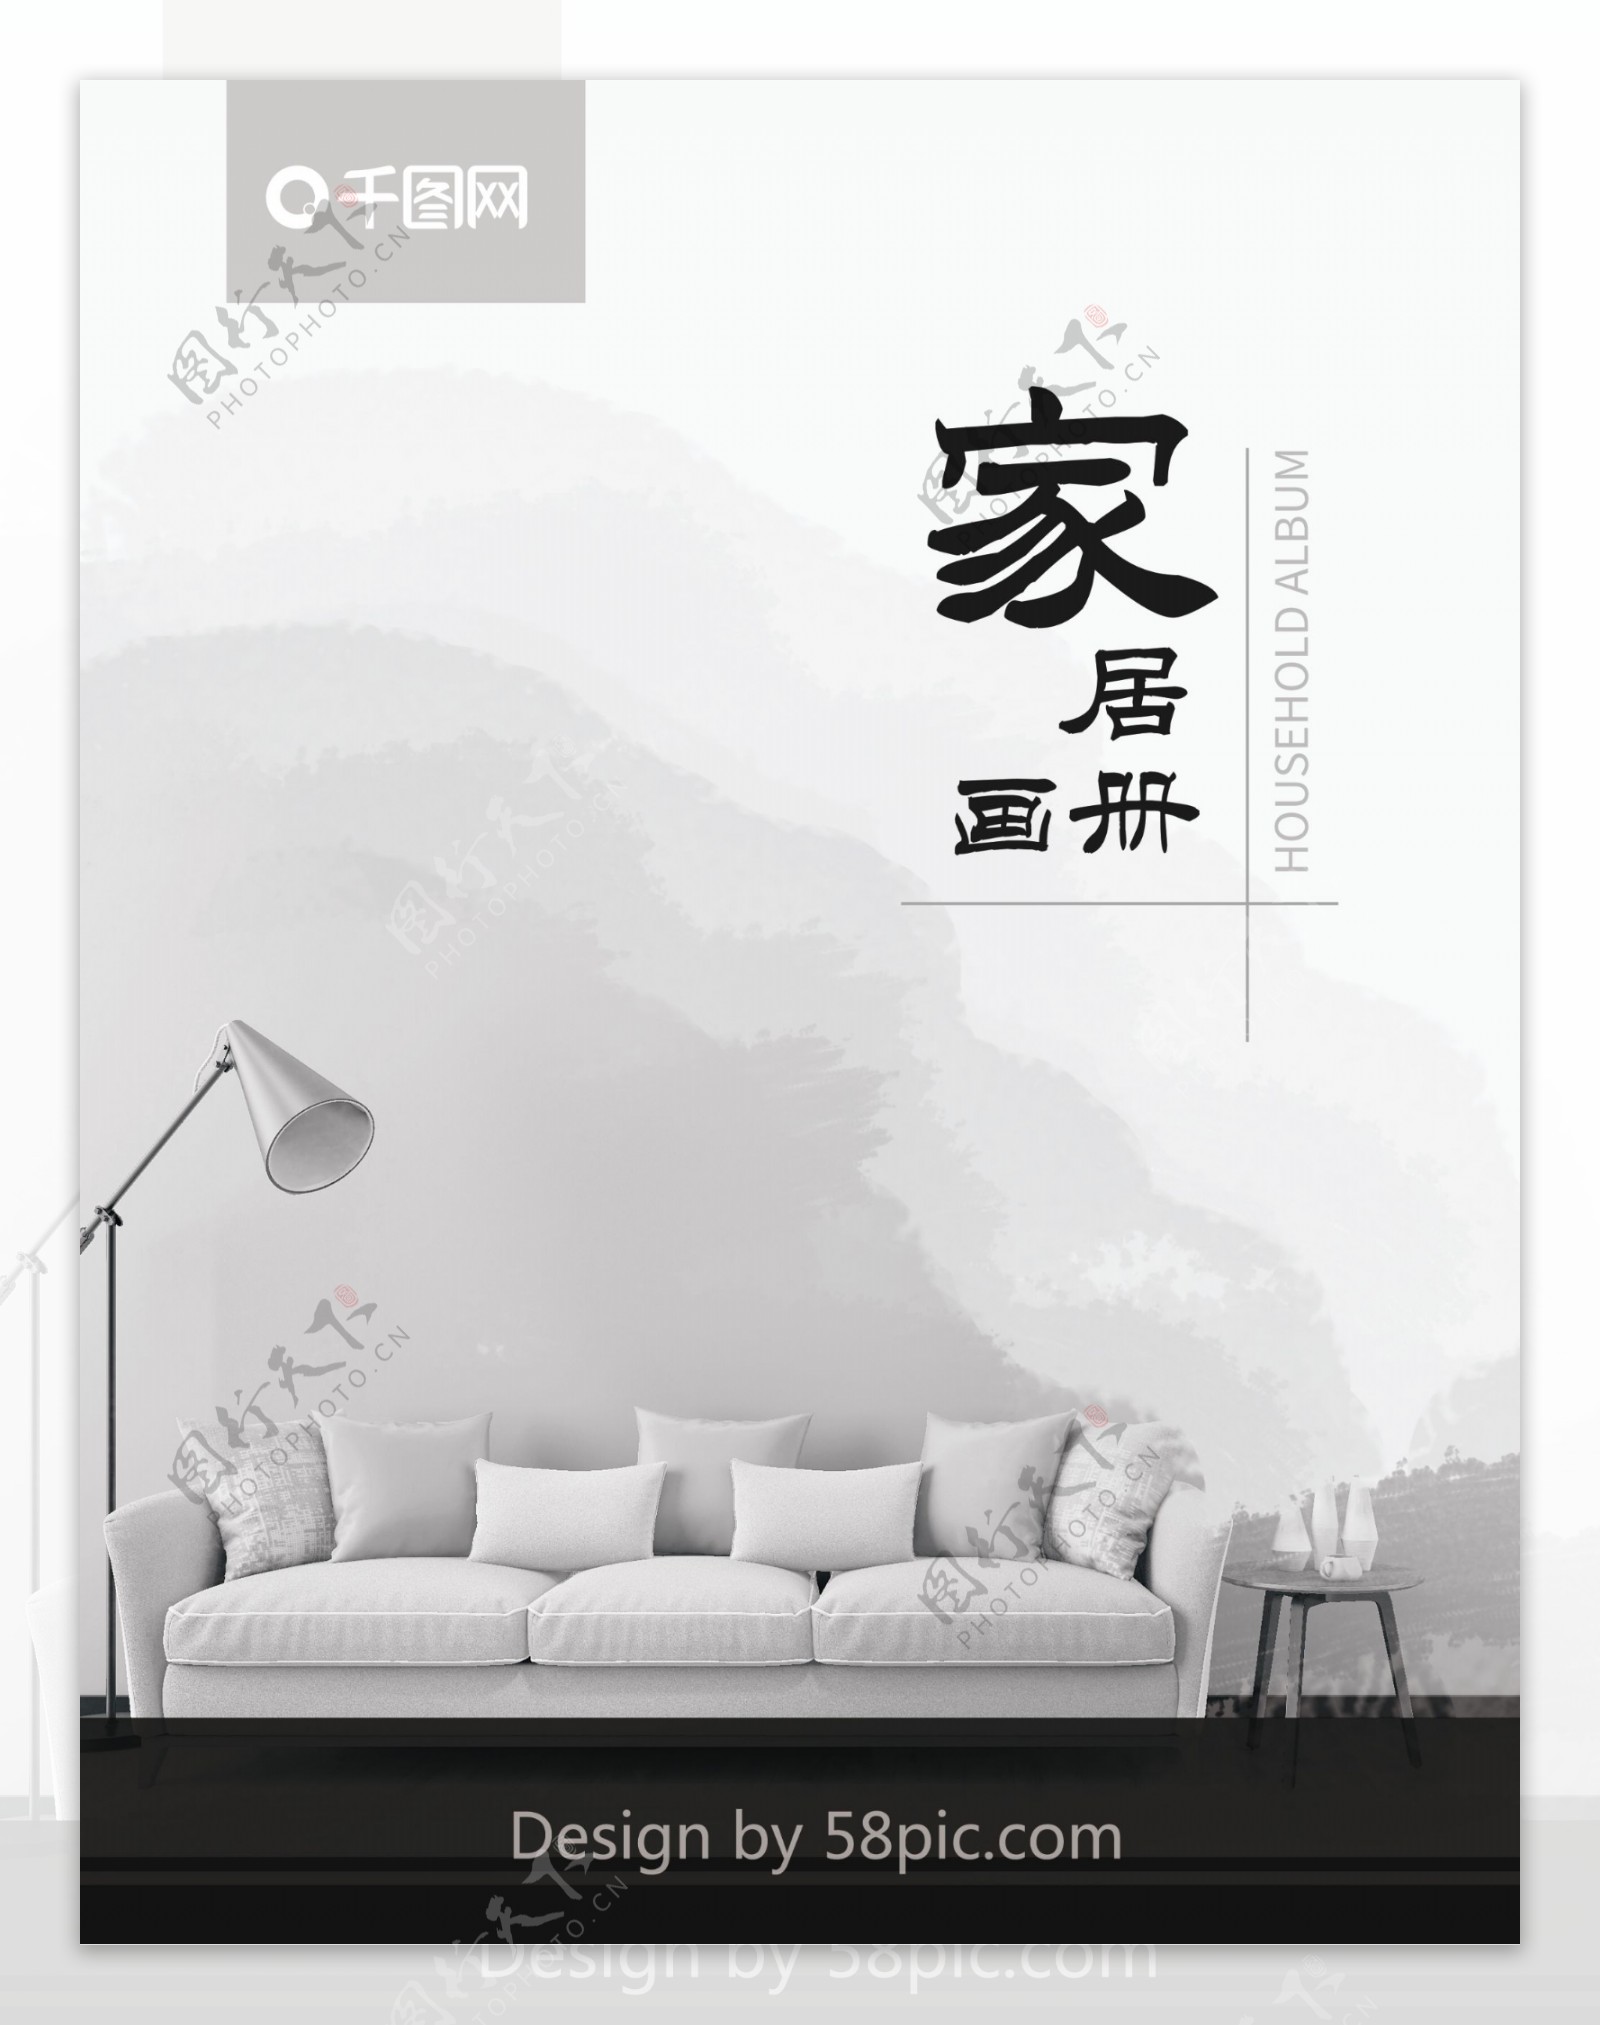 灰色中国风沙发家居宣传画册封面